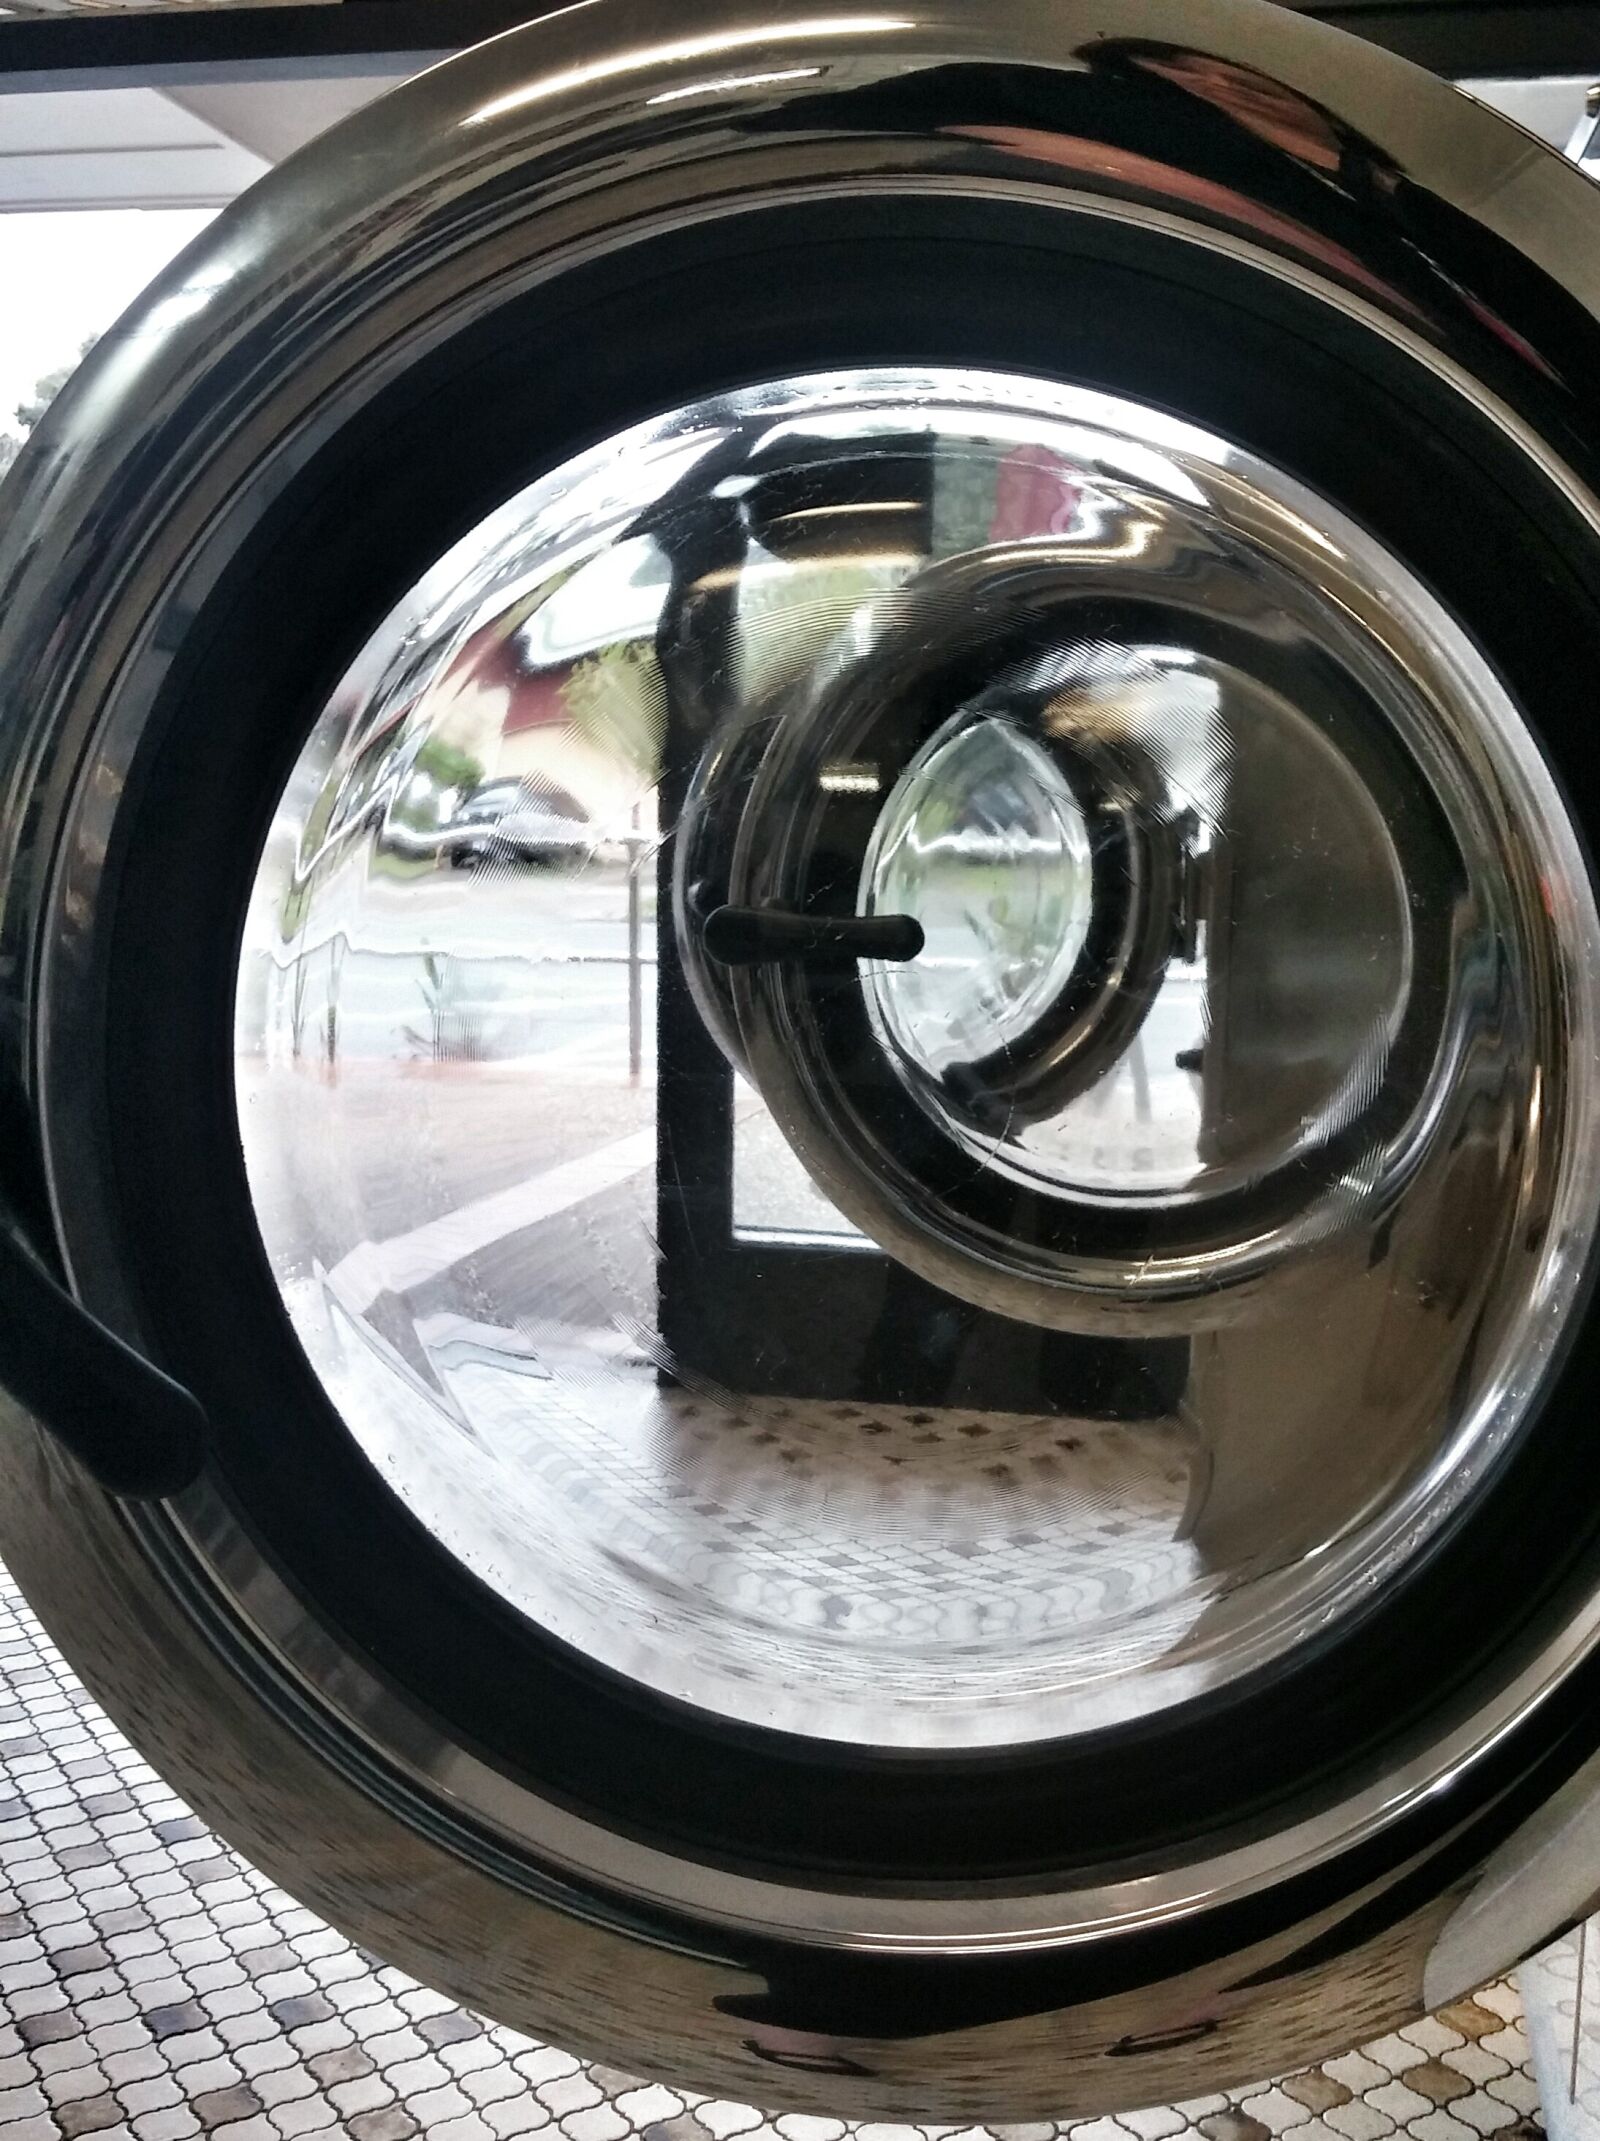 LG D80 sample photo. Laundromat, launderette, washing photography